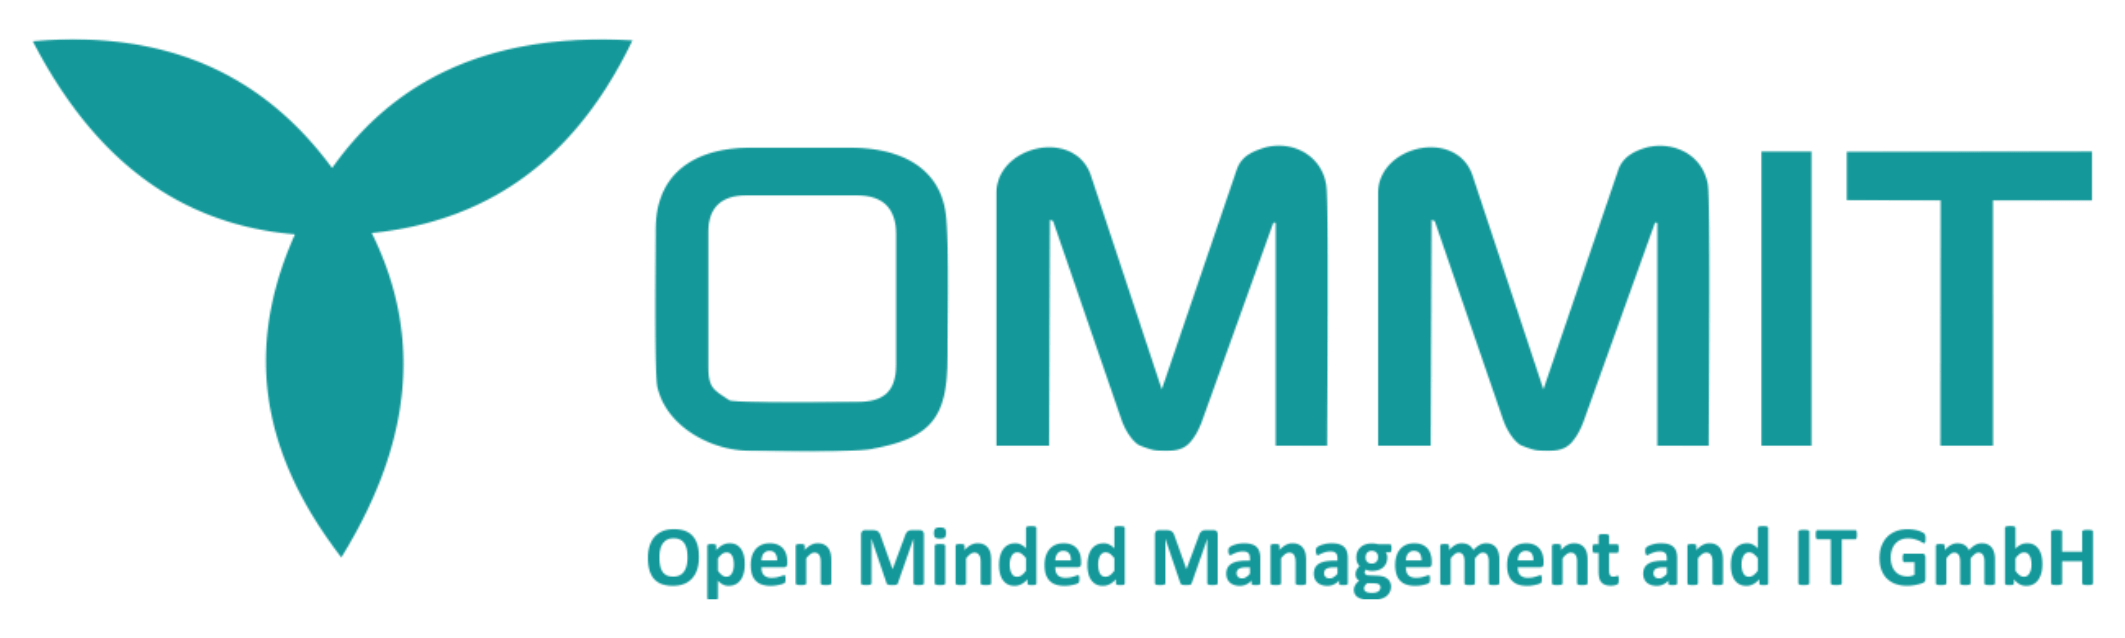 Logo OMMIT GmbH